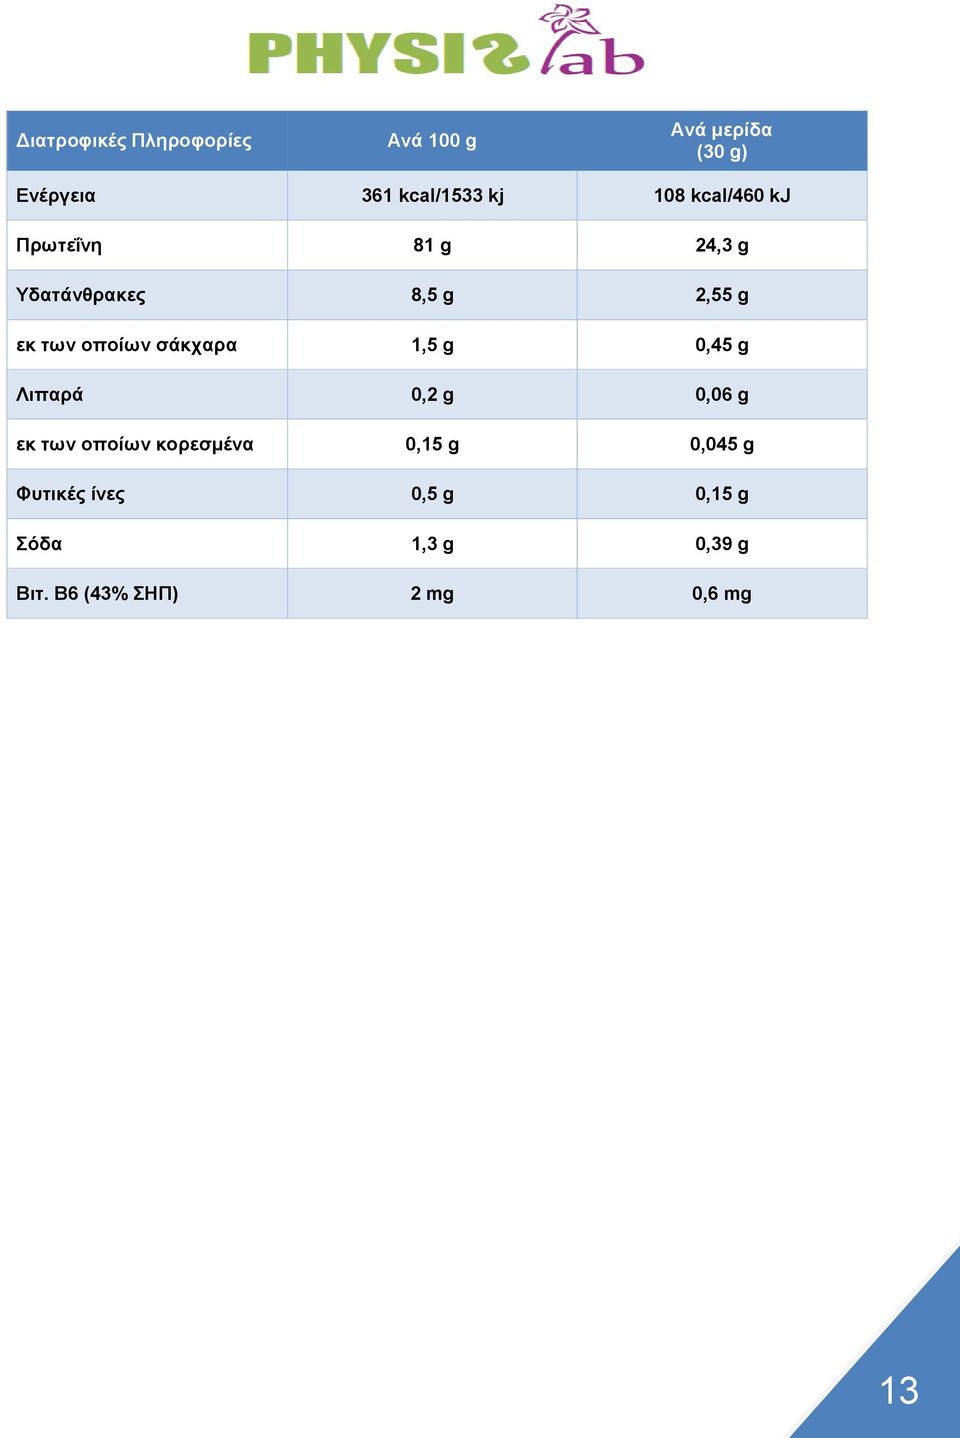 σάκχαρα 1,5 g 0,45 g Λιπαρά 0,2 g 0,06 g εκ των οποίων κορεσμένα 0,15 g 0,045